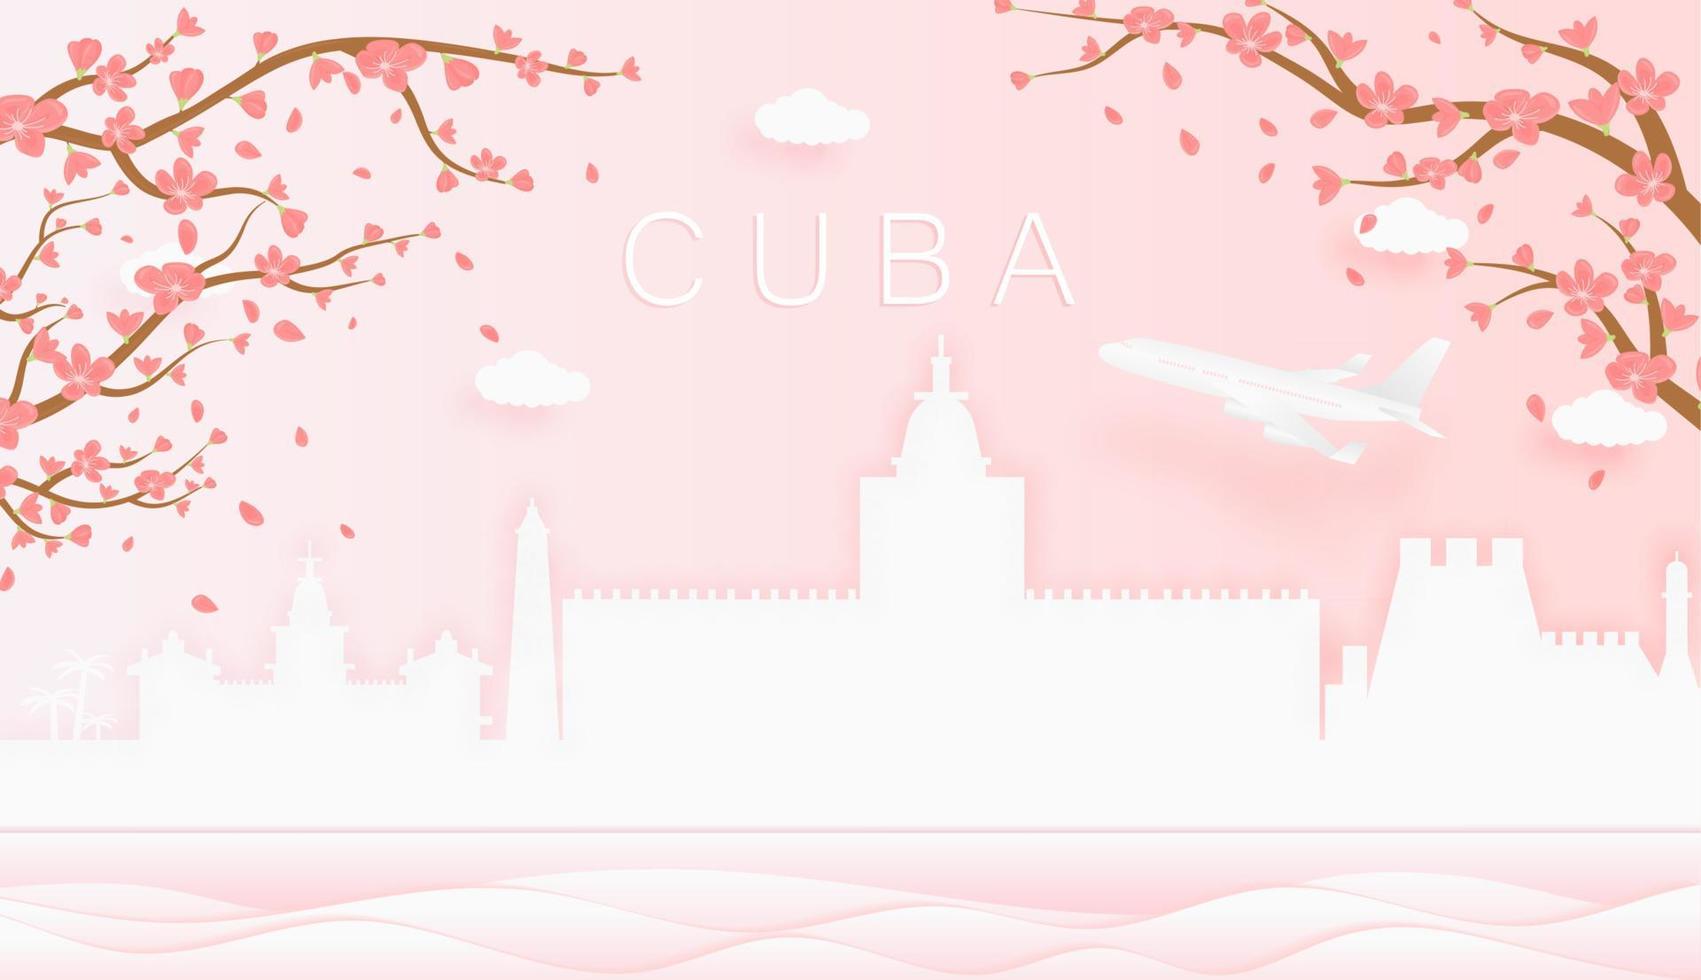 panorama viaje tarjeta postal, póster, excursión publicidad de mundo famoso puntos de referencia de Cuba, primavera temporada con floreciente flores en árbol vector